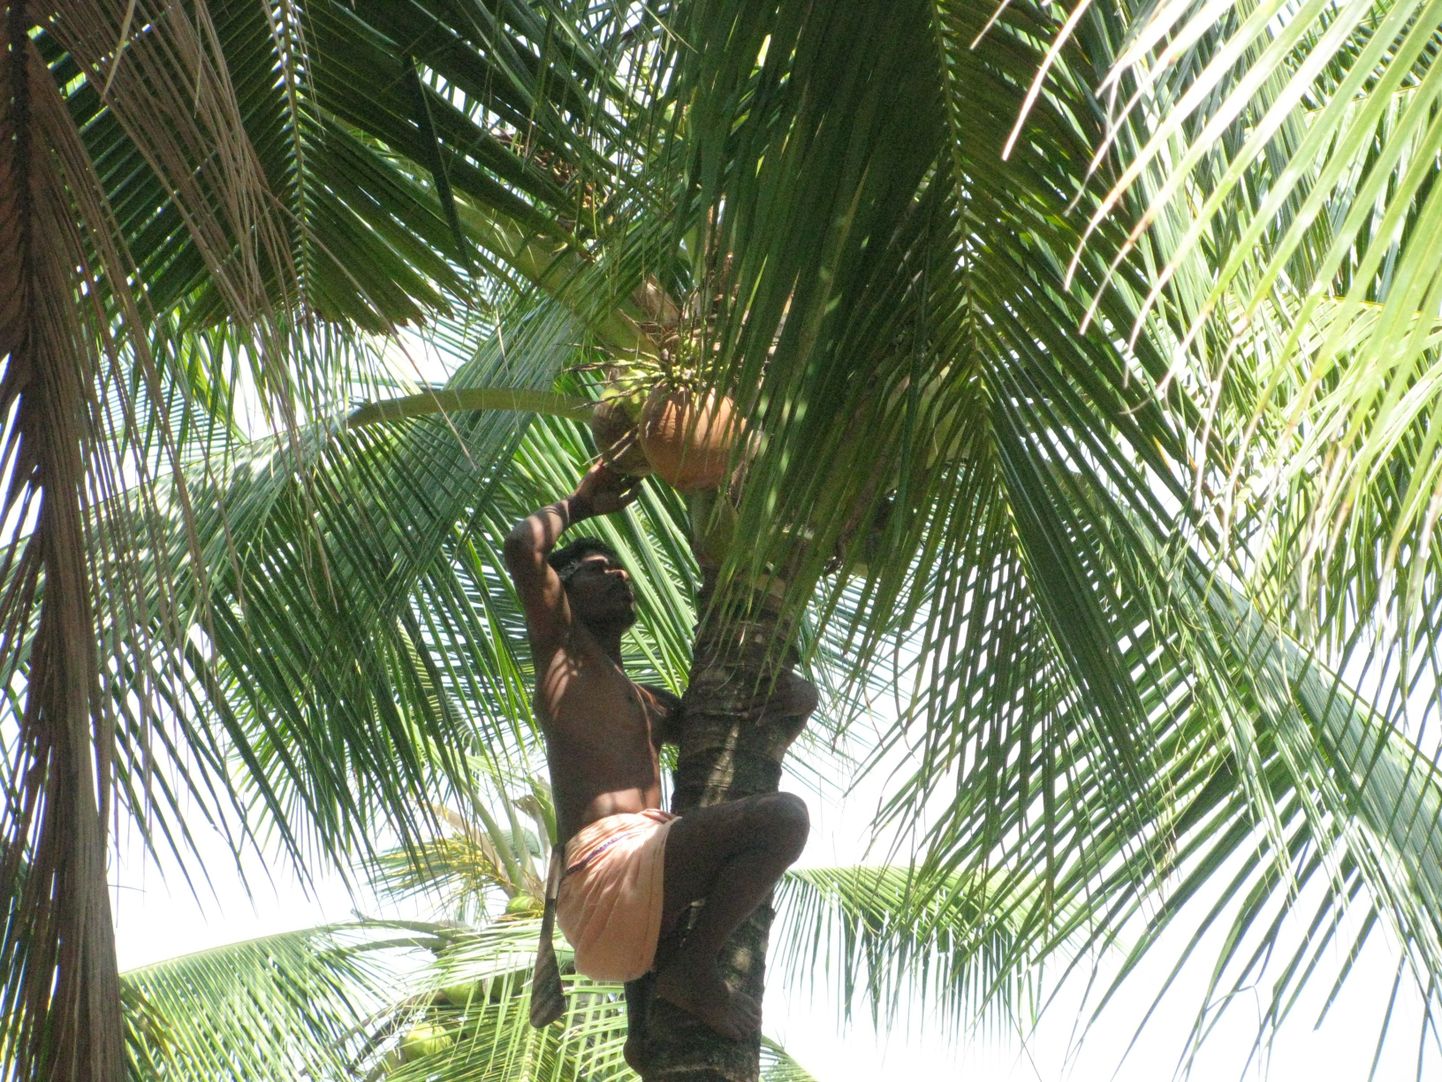 Nii käiakse Indias koduhoovis kookospähkleid korjamas.